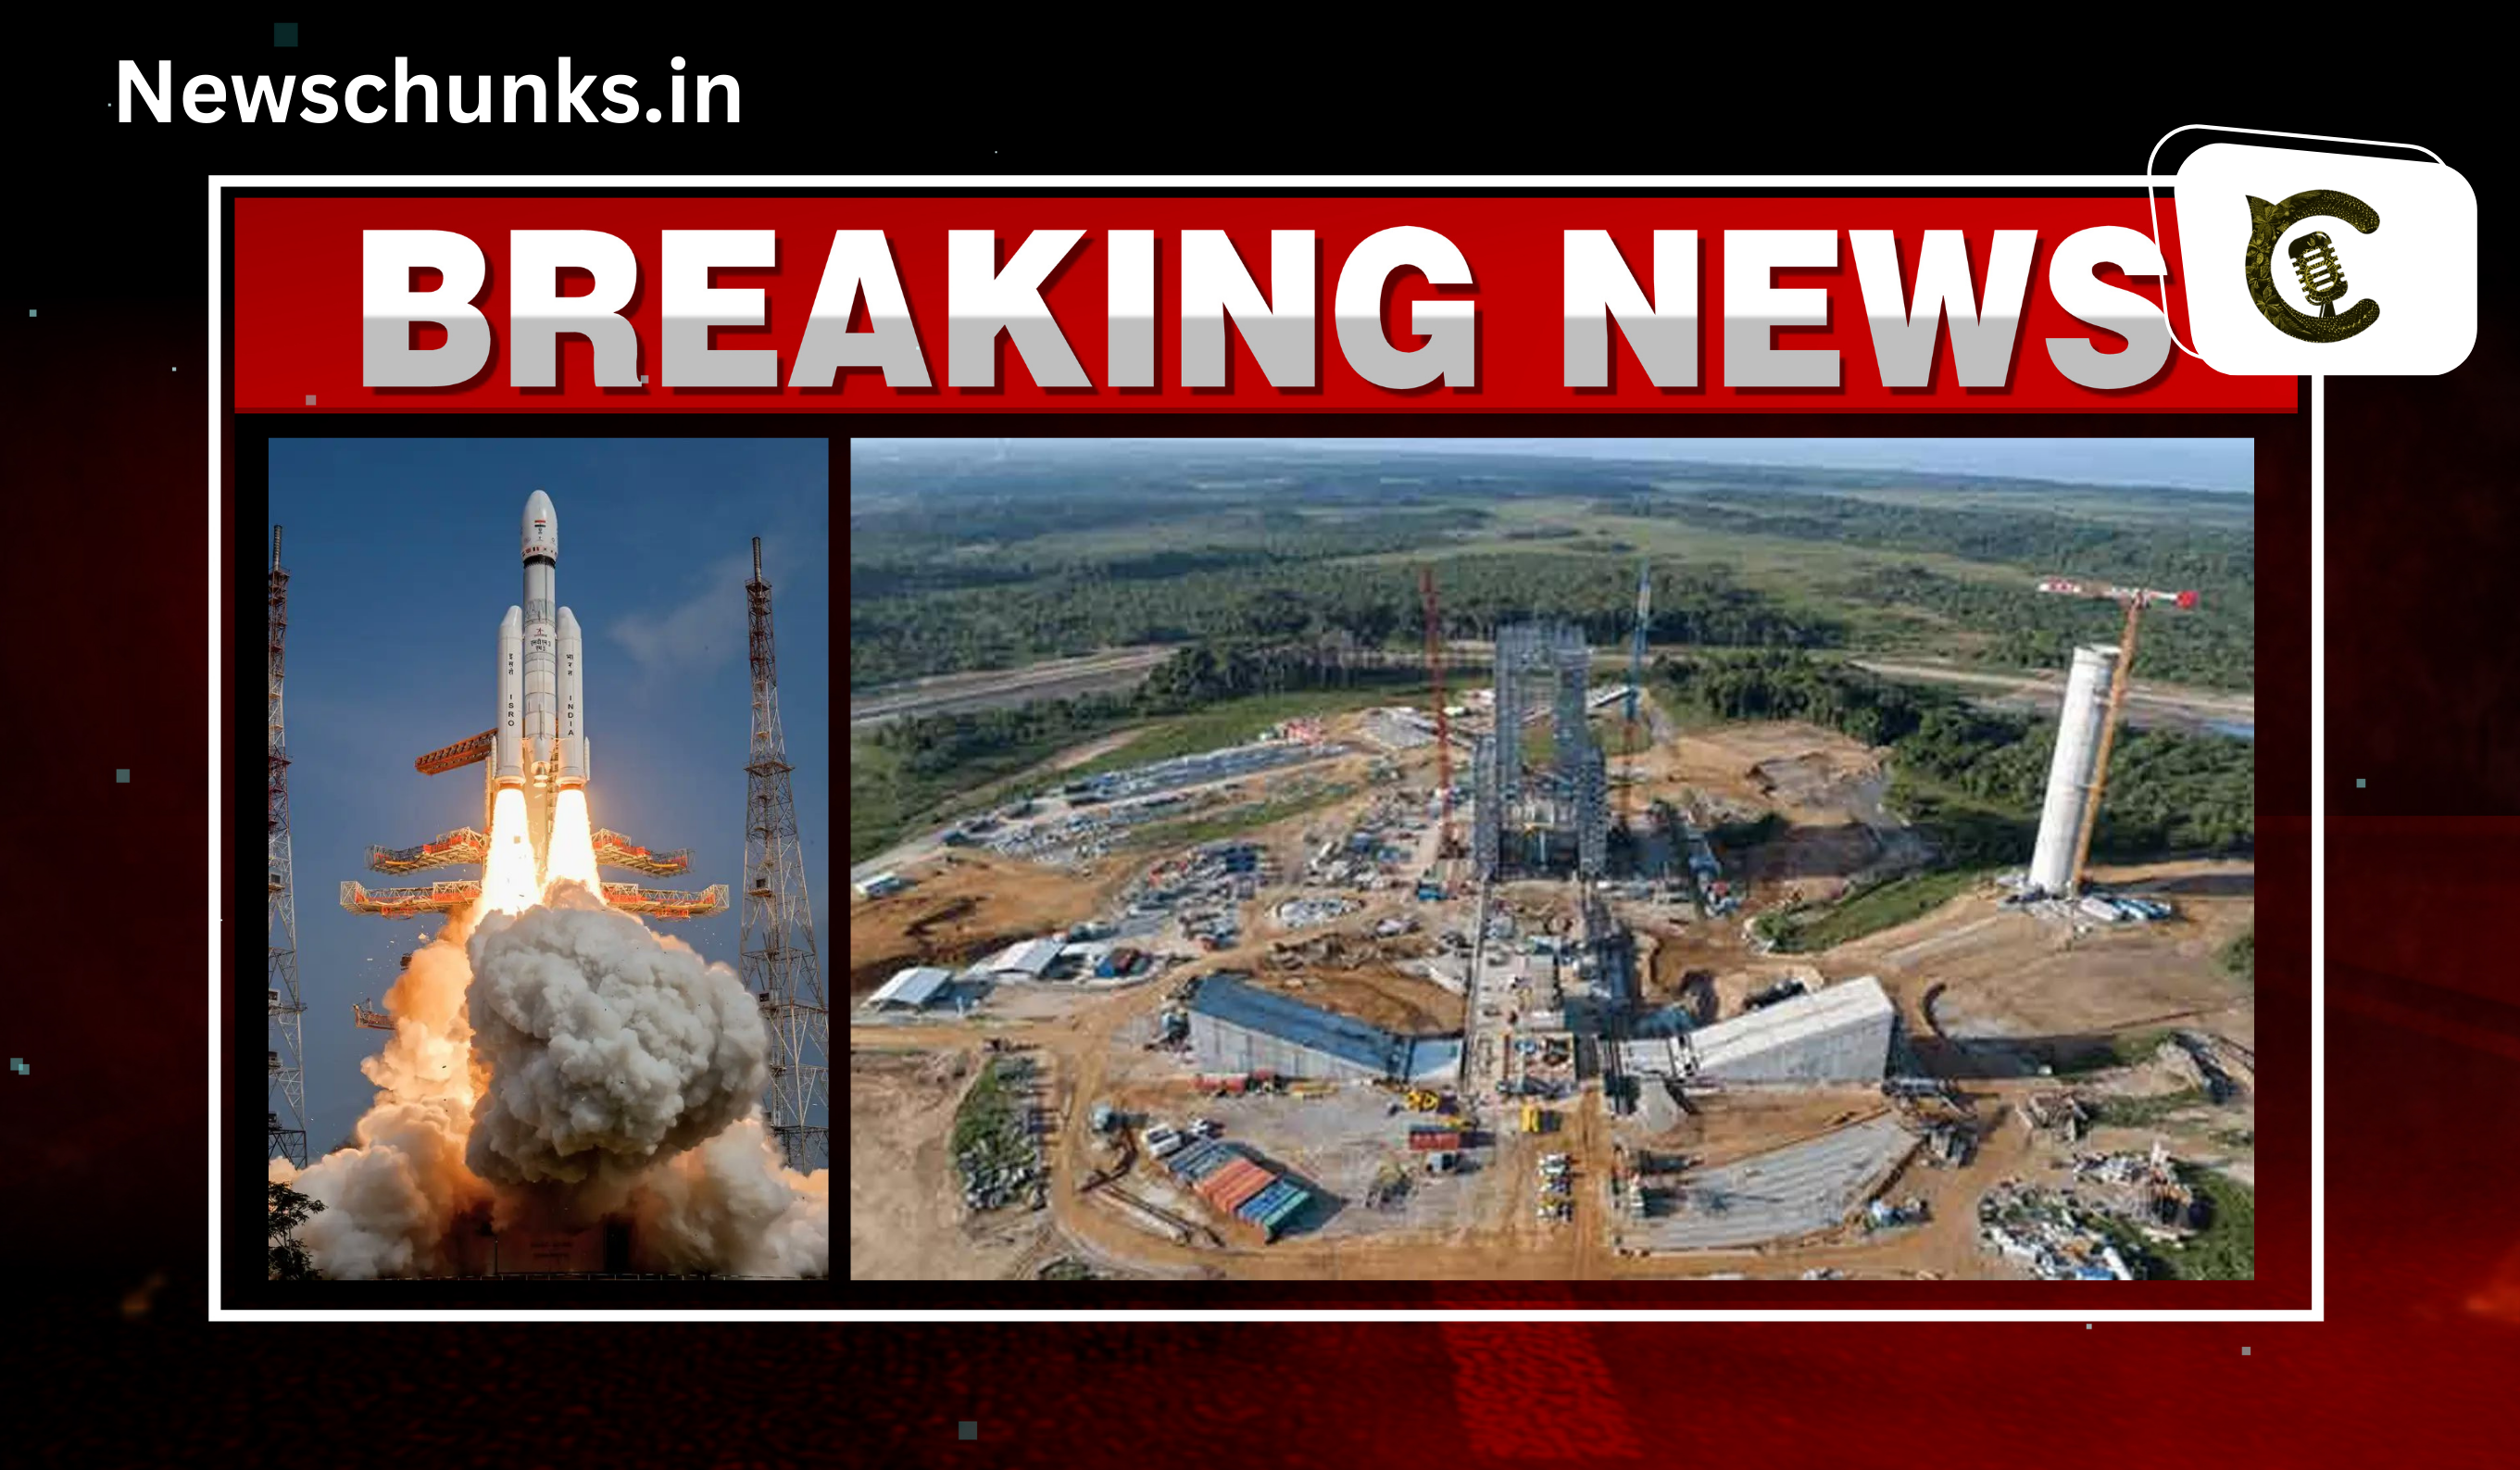 Kulasekarapattinam is the second spaceport: कुलसेकरपट्टिनम स्पेसपोर्ट, कैसे भारत के अंतरिक्ष मिशन को मिलेगी नई उड़ान?